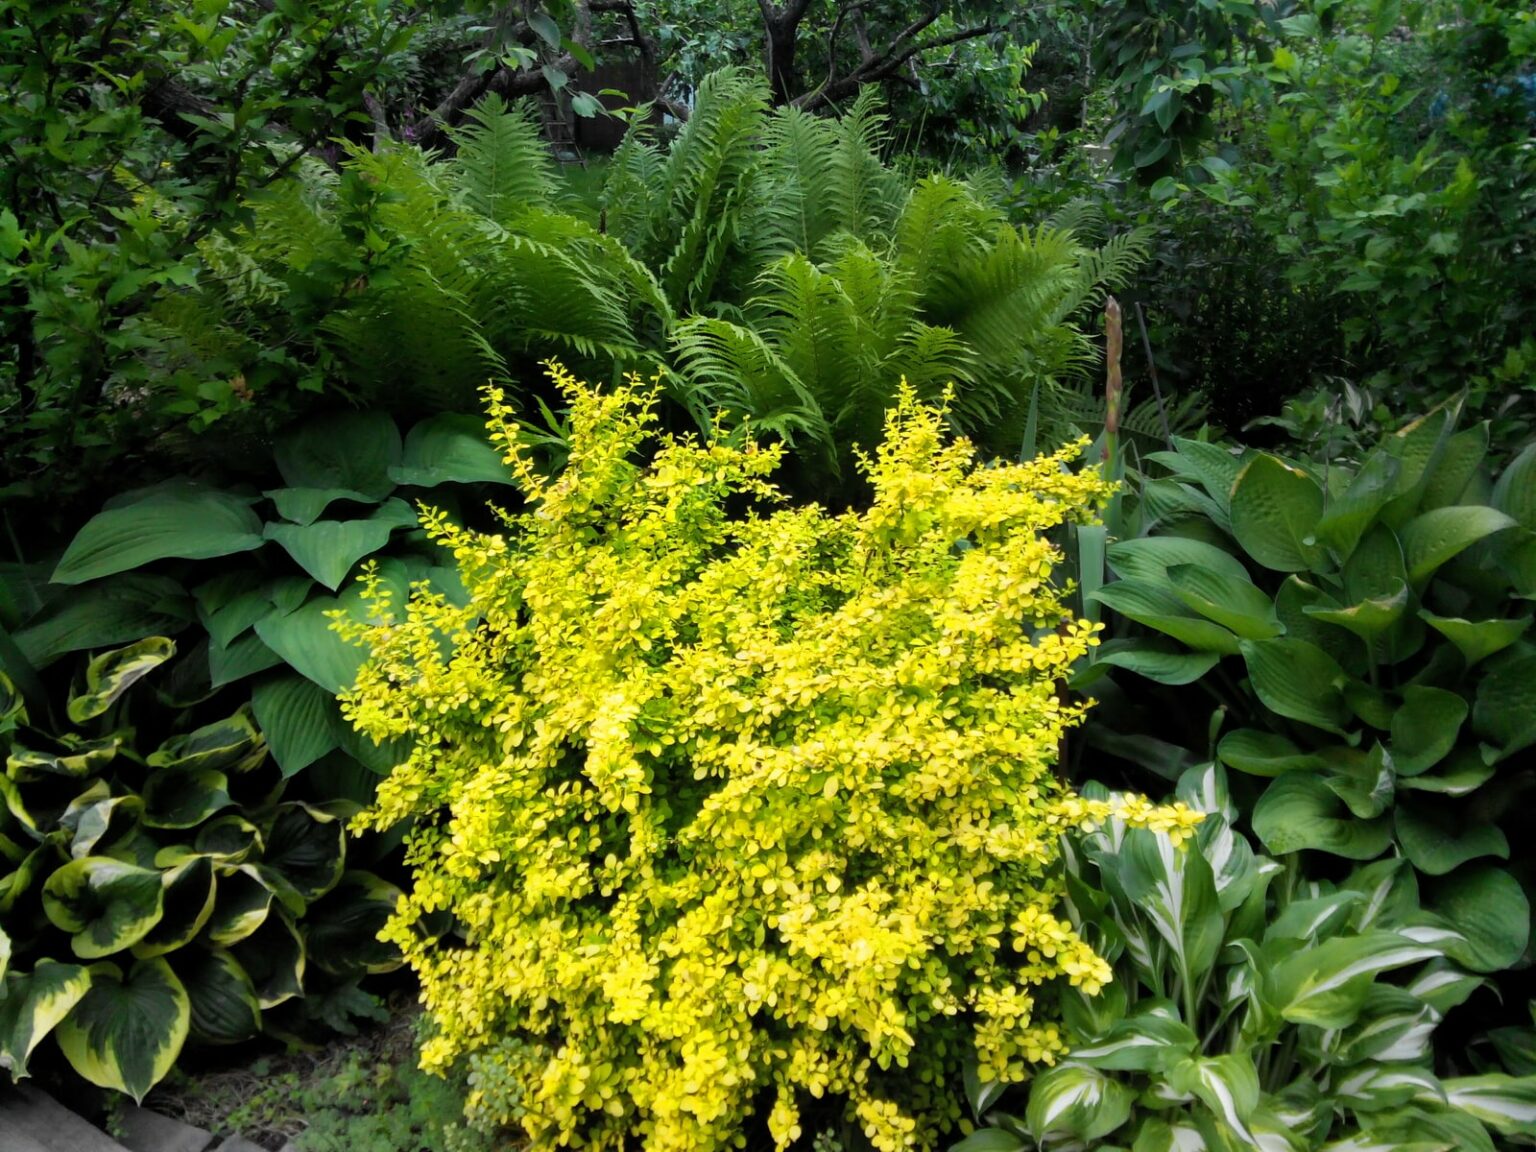 в затененных местах сада особенно красивы желтые сорта барбарисов